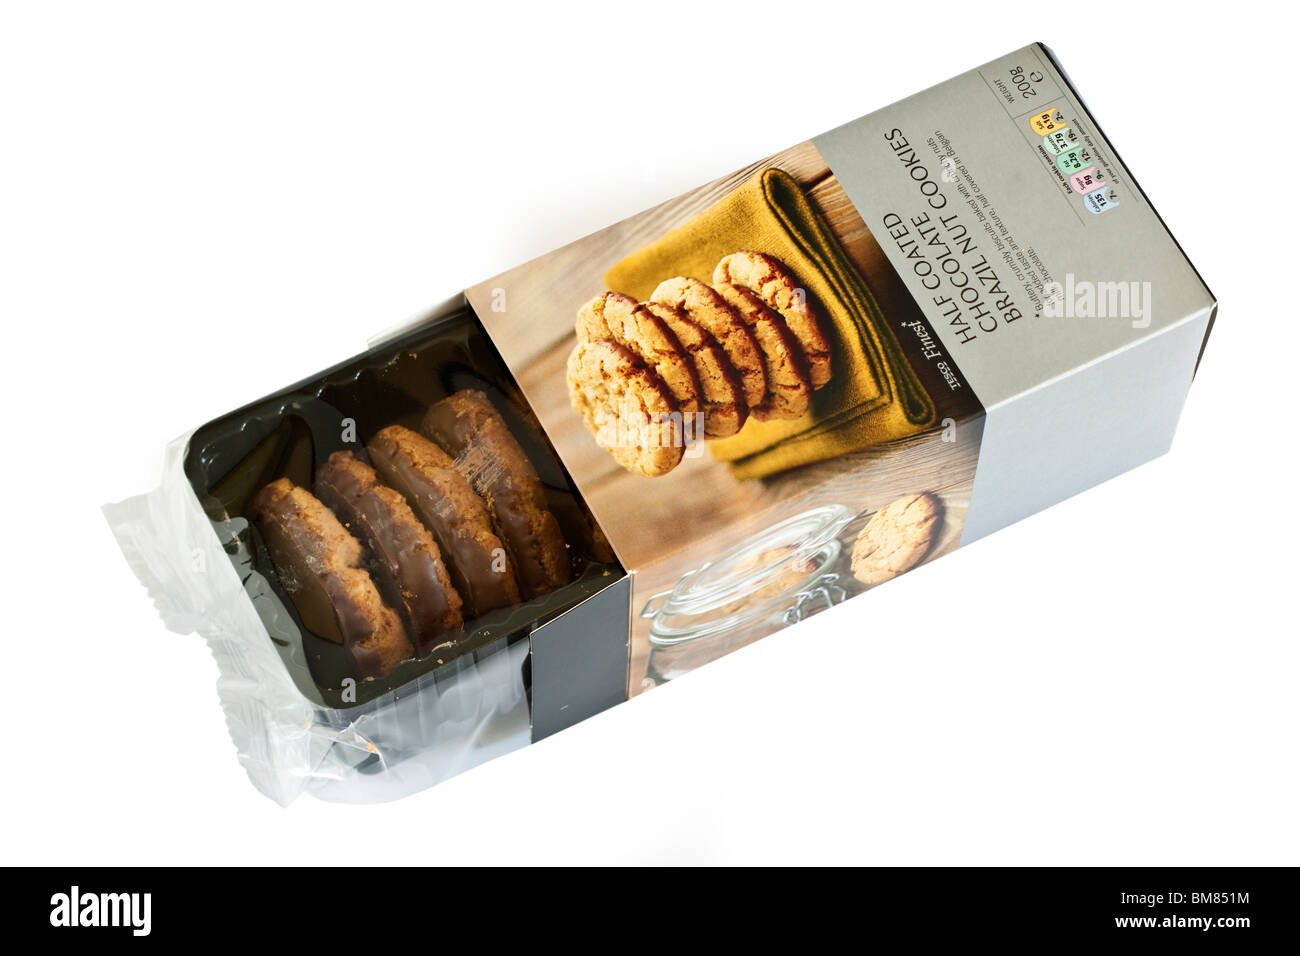 Boîte de 200g de chocolat enrobés de Tesco Finest moitié cookies noix du Brésil Banque D'Images